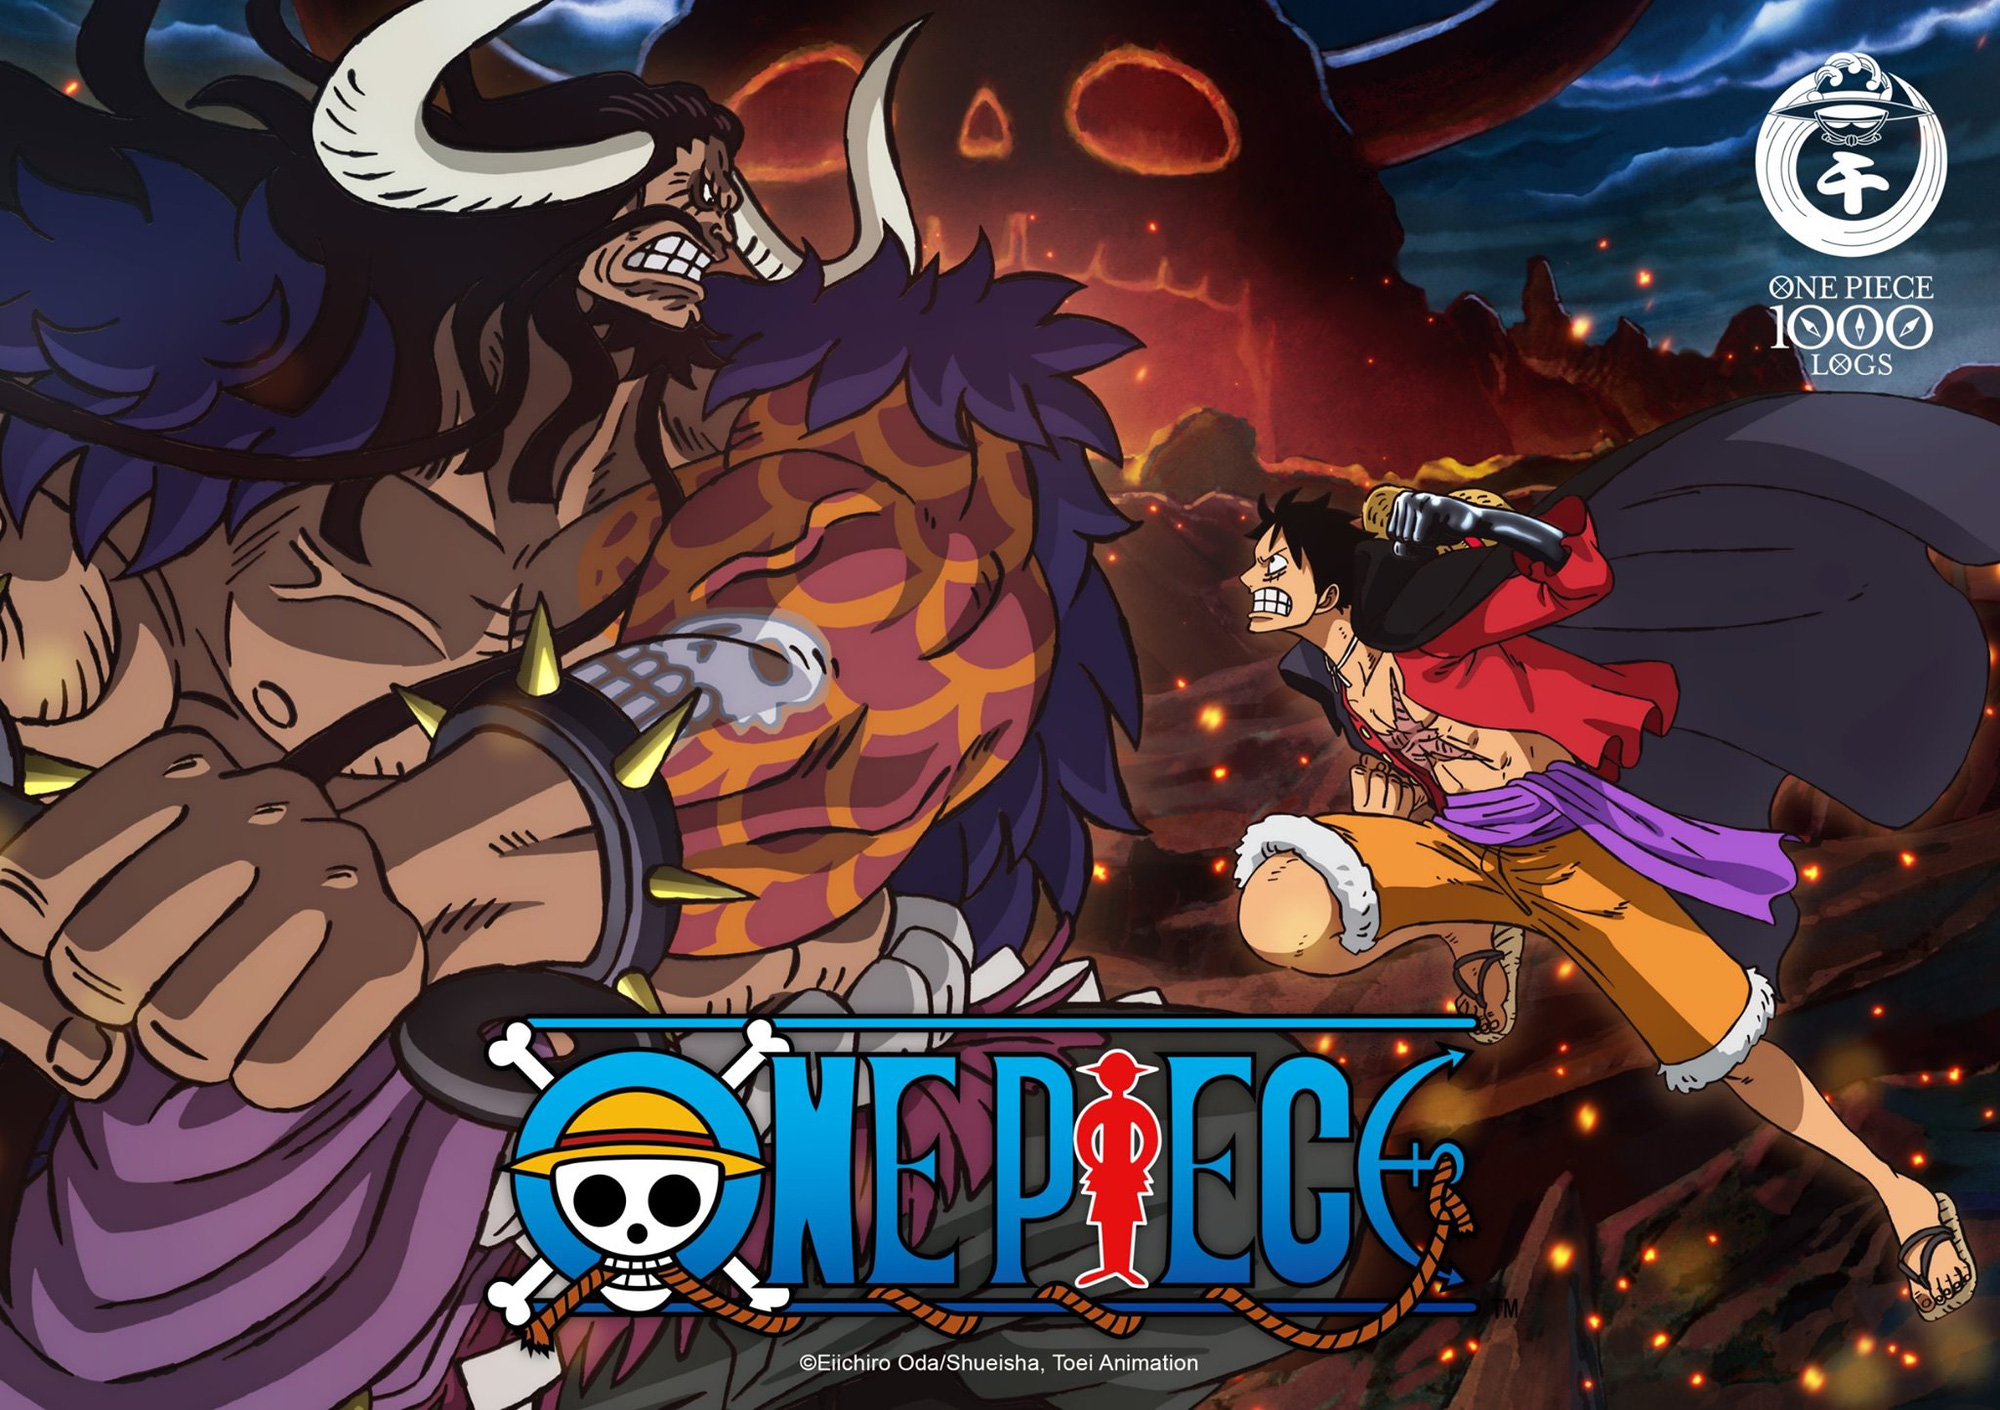 Hãy xem ảnh One Piece độc đáo này! Bạn sẽ không ngờ được tác phẩm này tích tụ được bao nhiêu tình tiết và sự giải trí tinh thần. Hãy truyền năng lượng tích cực cho ngày mới bằng việc thưởng thức ảnh One Piece này nhé!